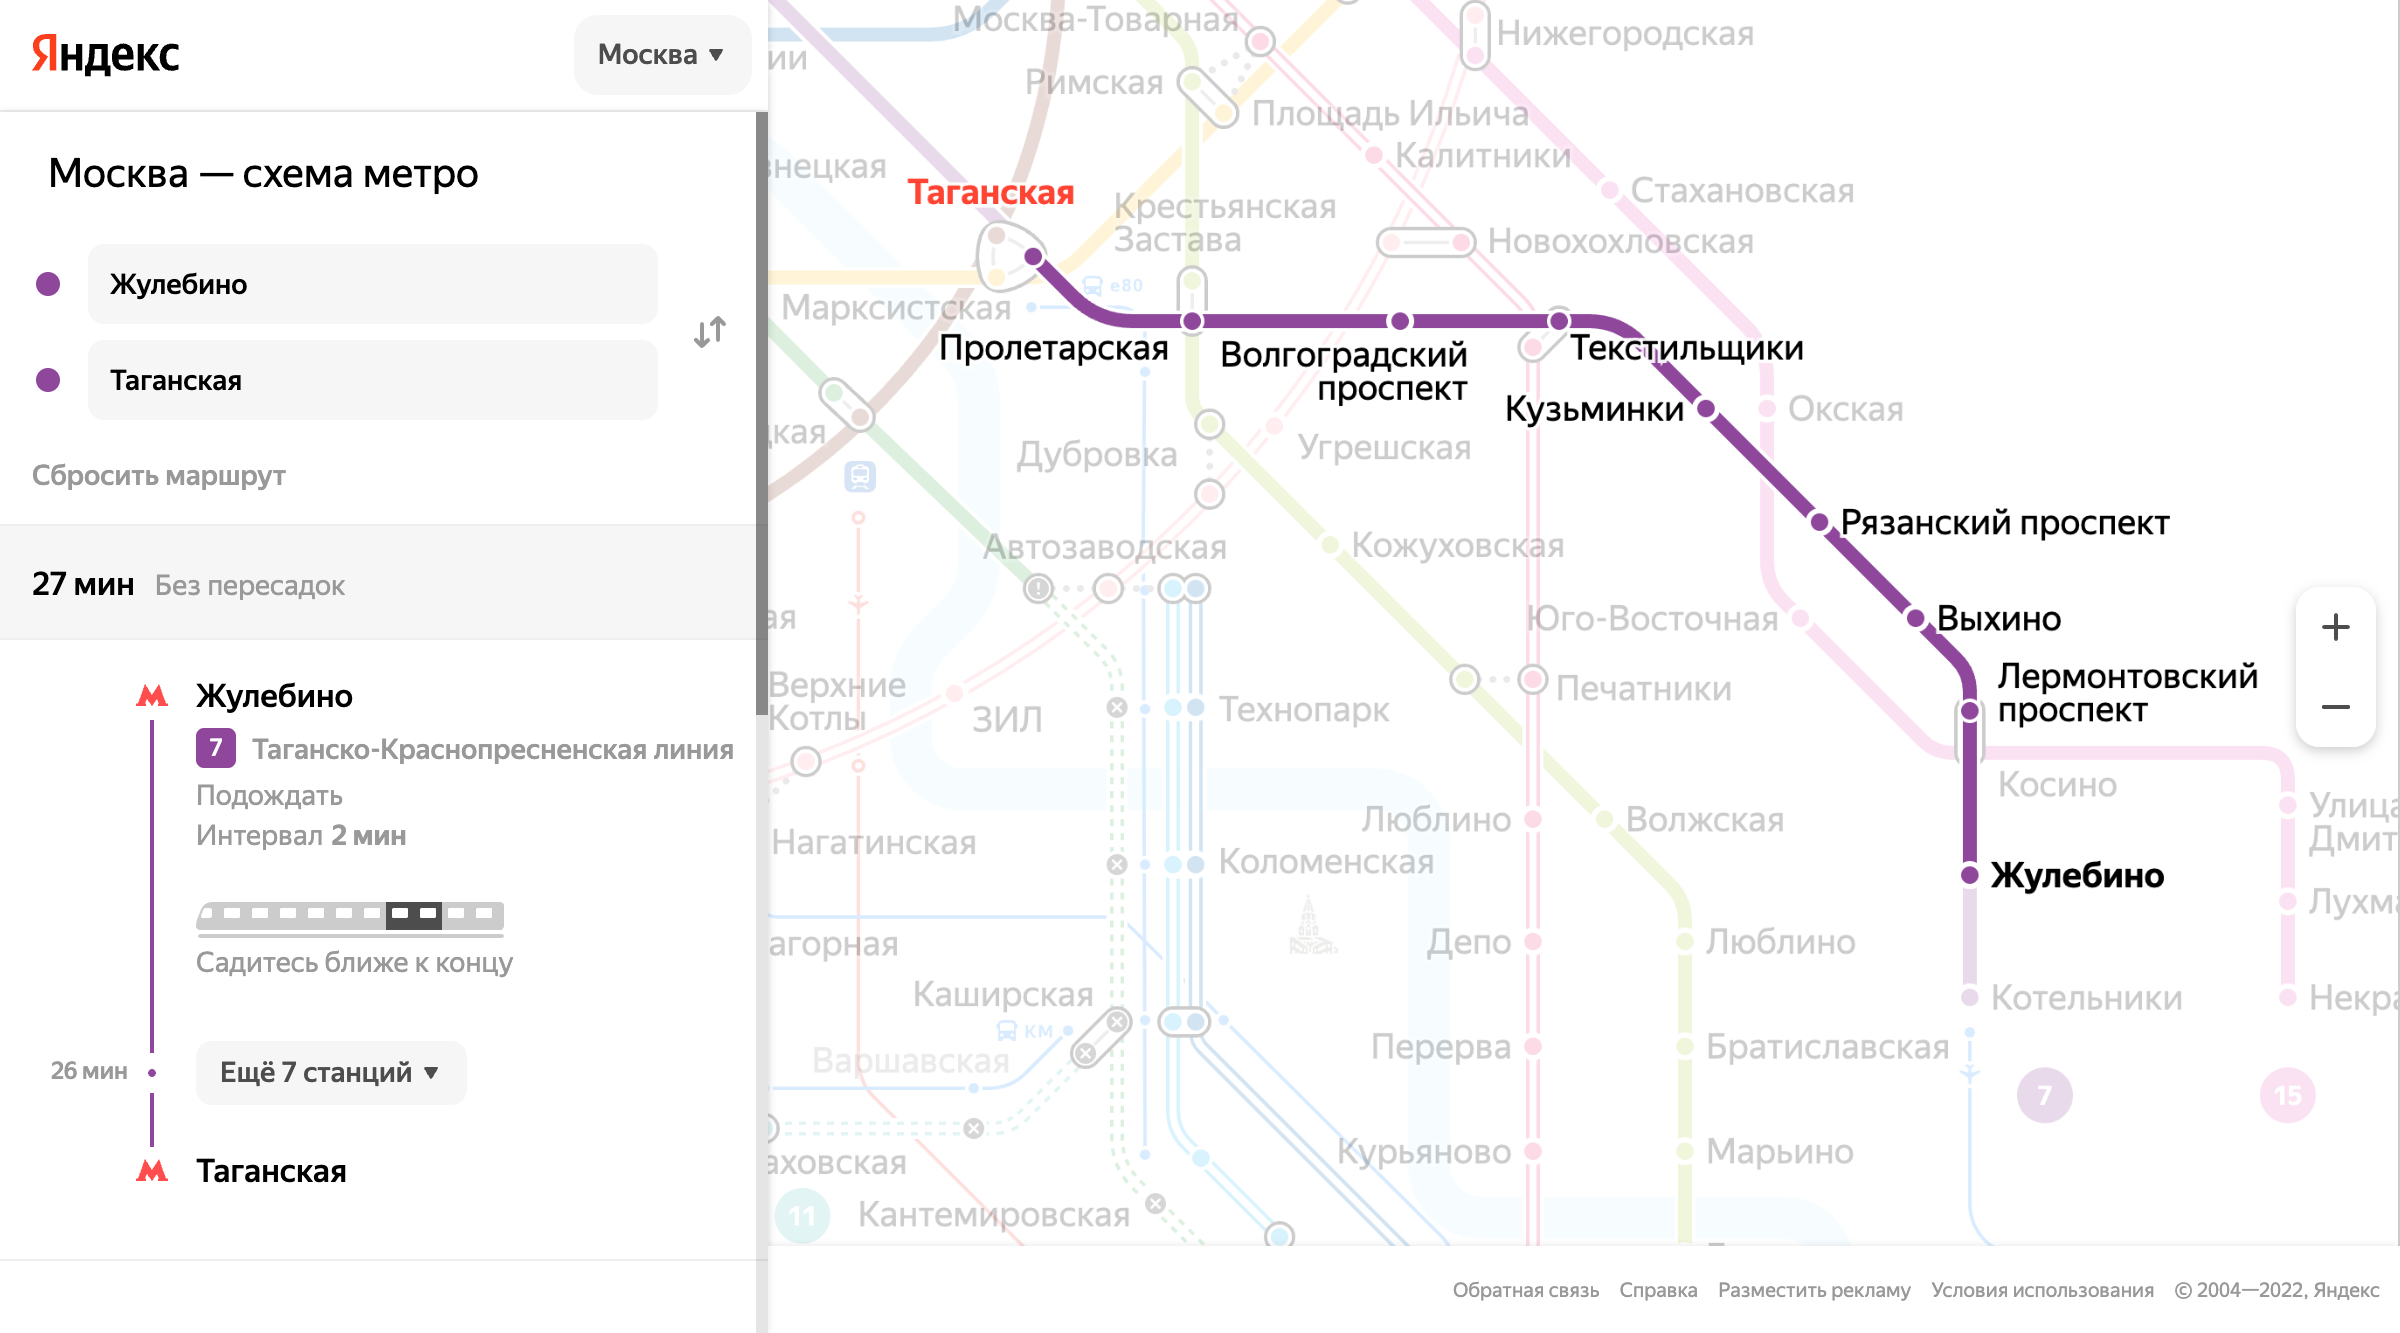 От станции метро «Жулебино» до «Таганской» можно доехать за 26 минут. Источник: yandex.ru